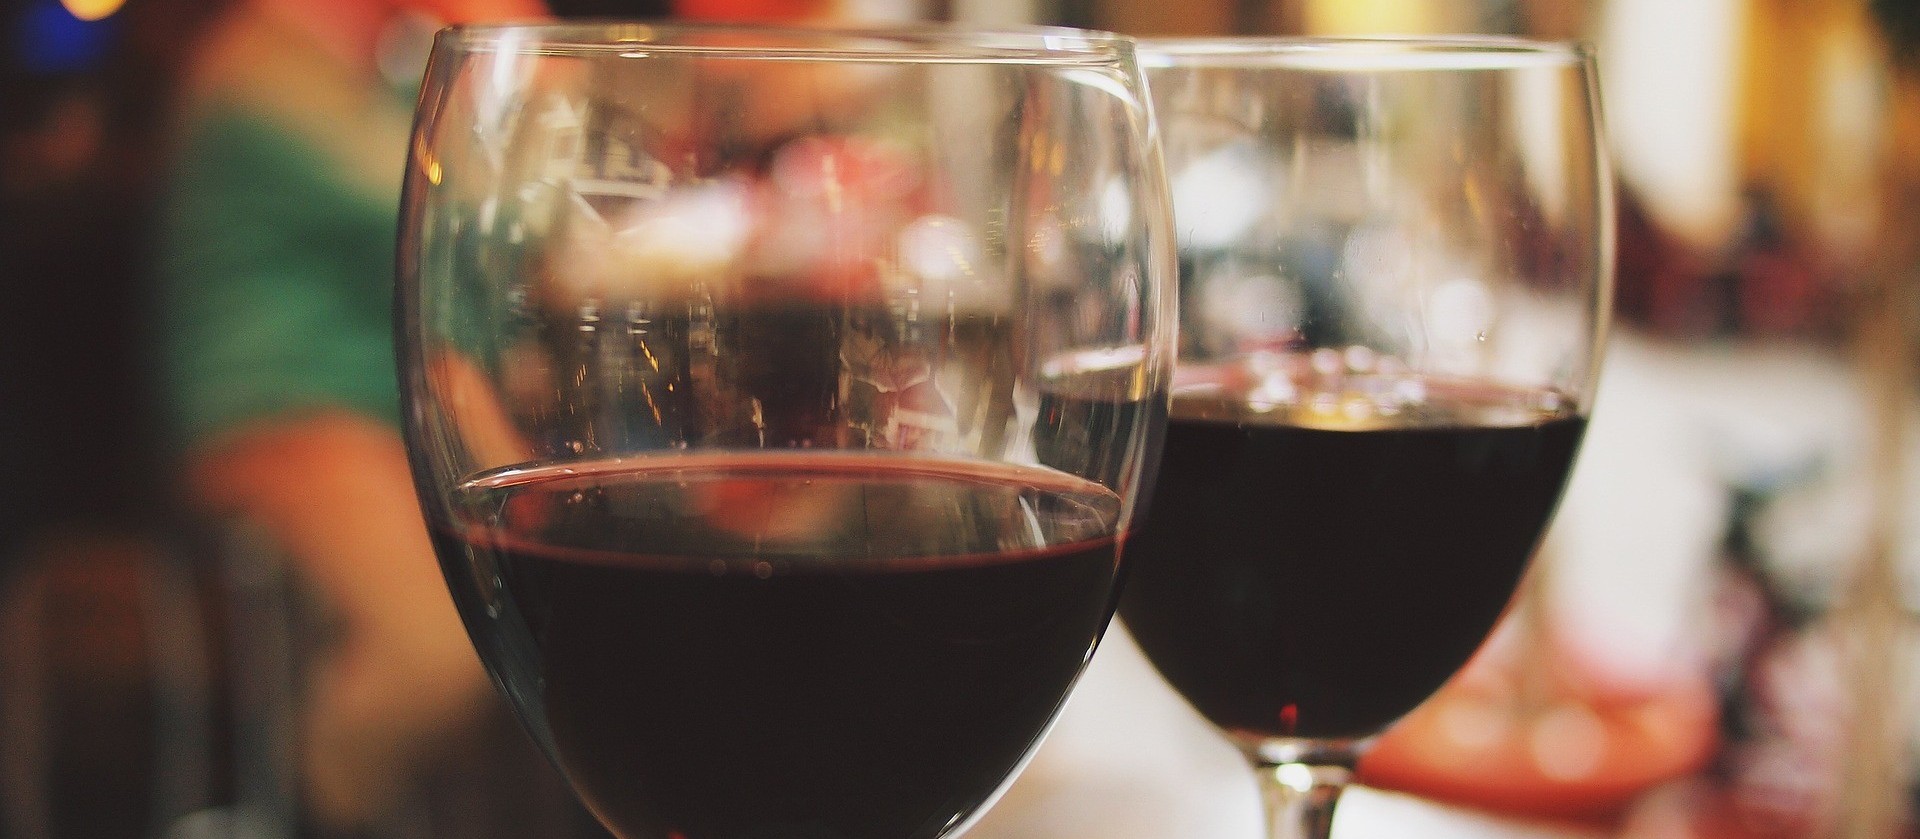 Saborear um vinho envolve visão, olfato, tato e paladar